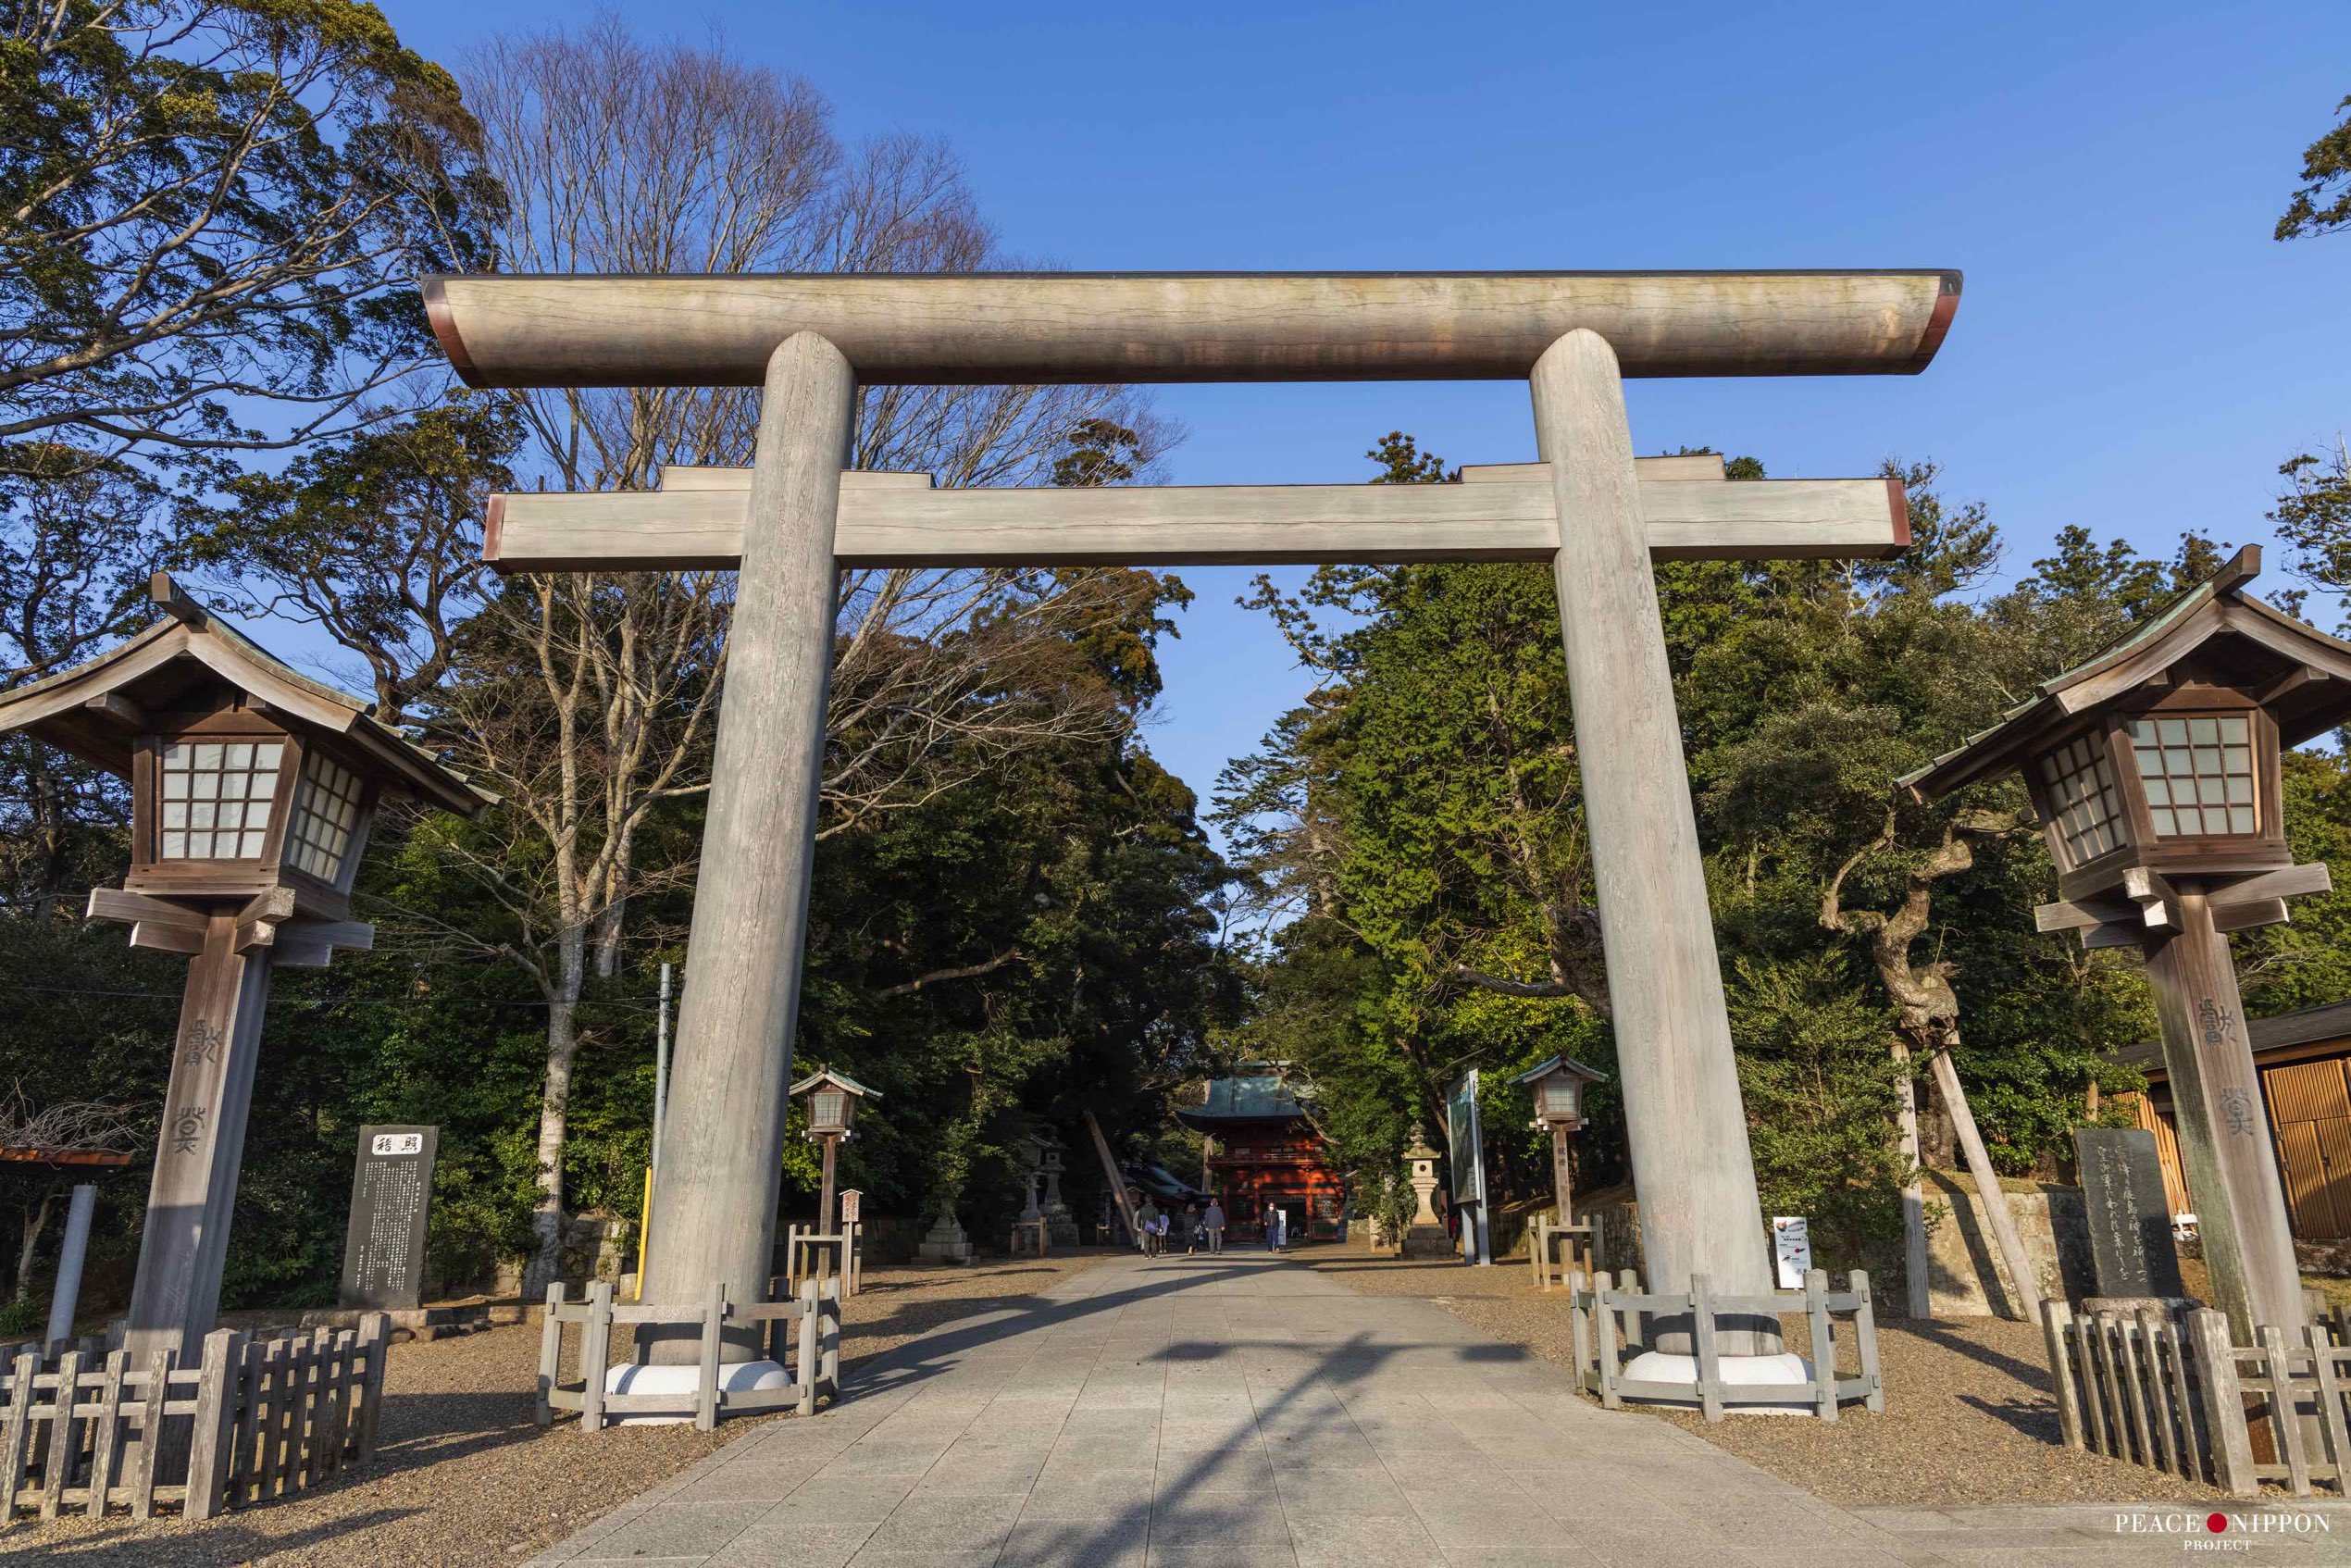 鹿島神宮 Kashima Jingu Shrine – Peace Nippon Project